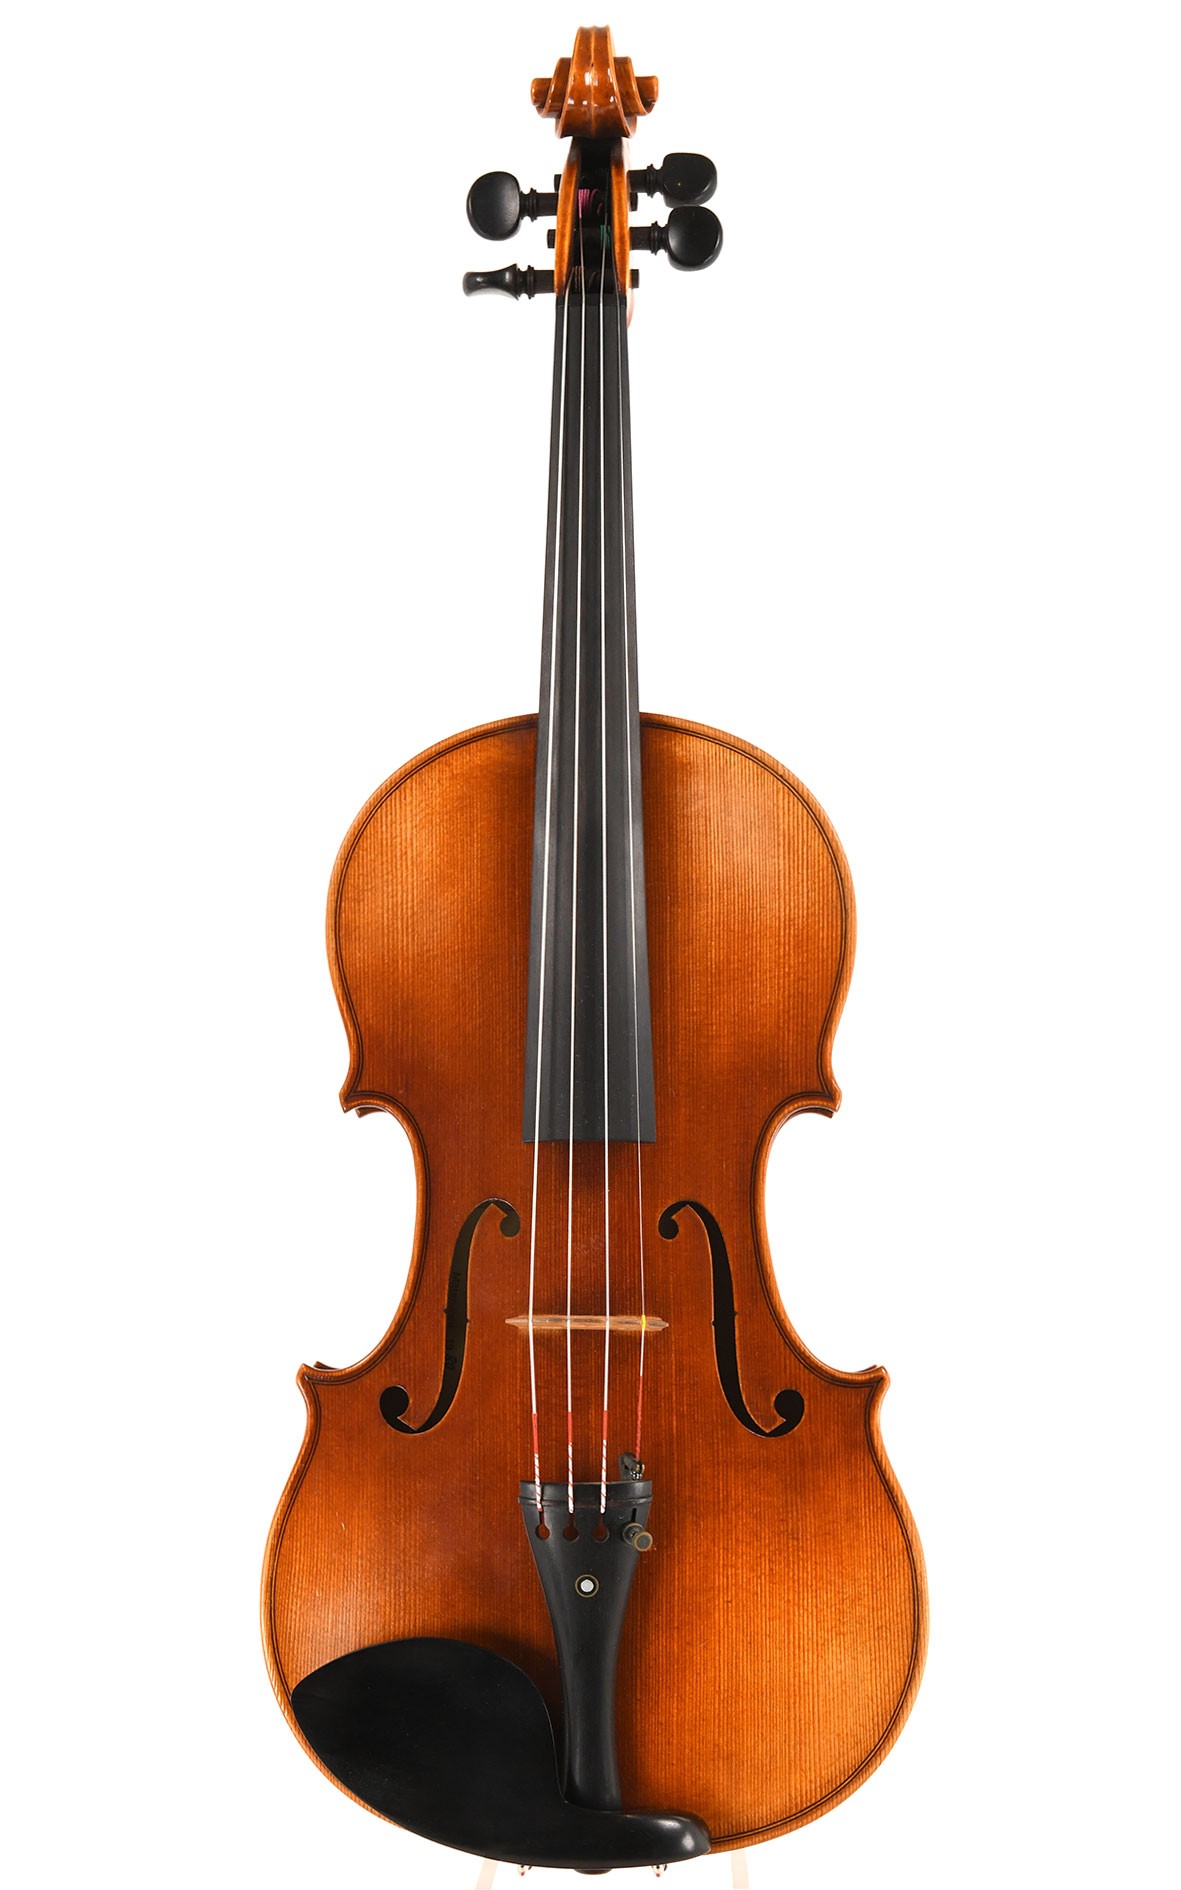 Rolnd Sandner Violine, Geigenbaumeister Mittenwald